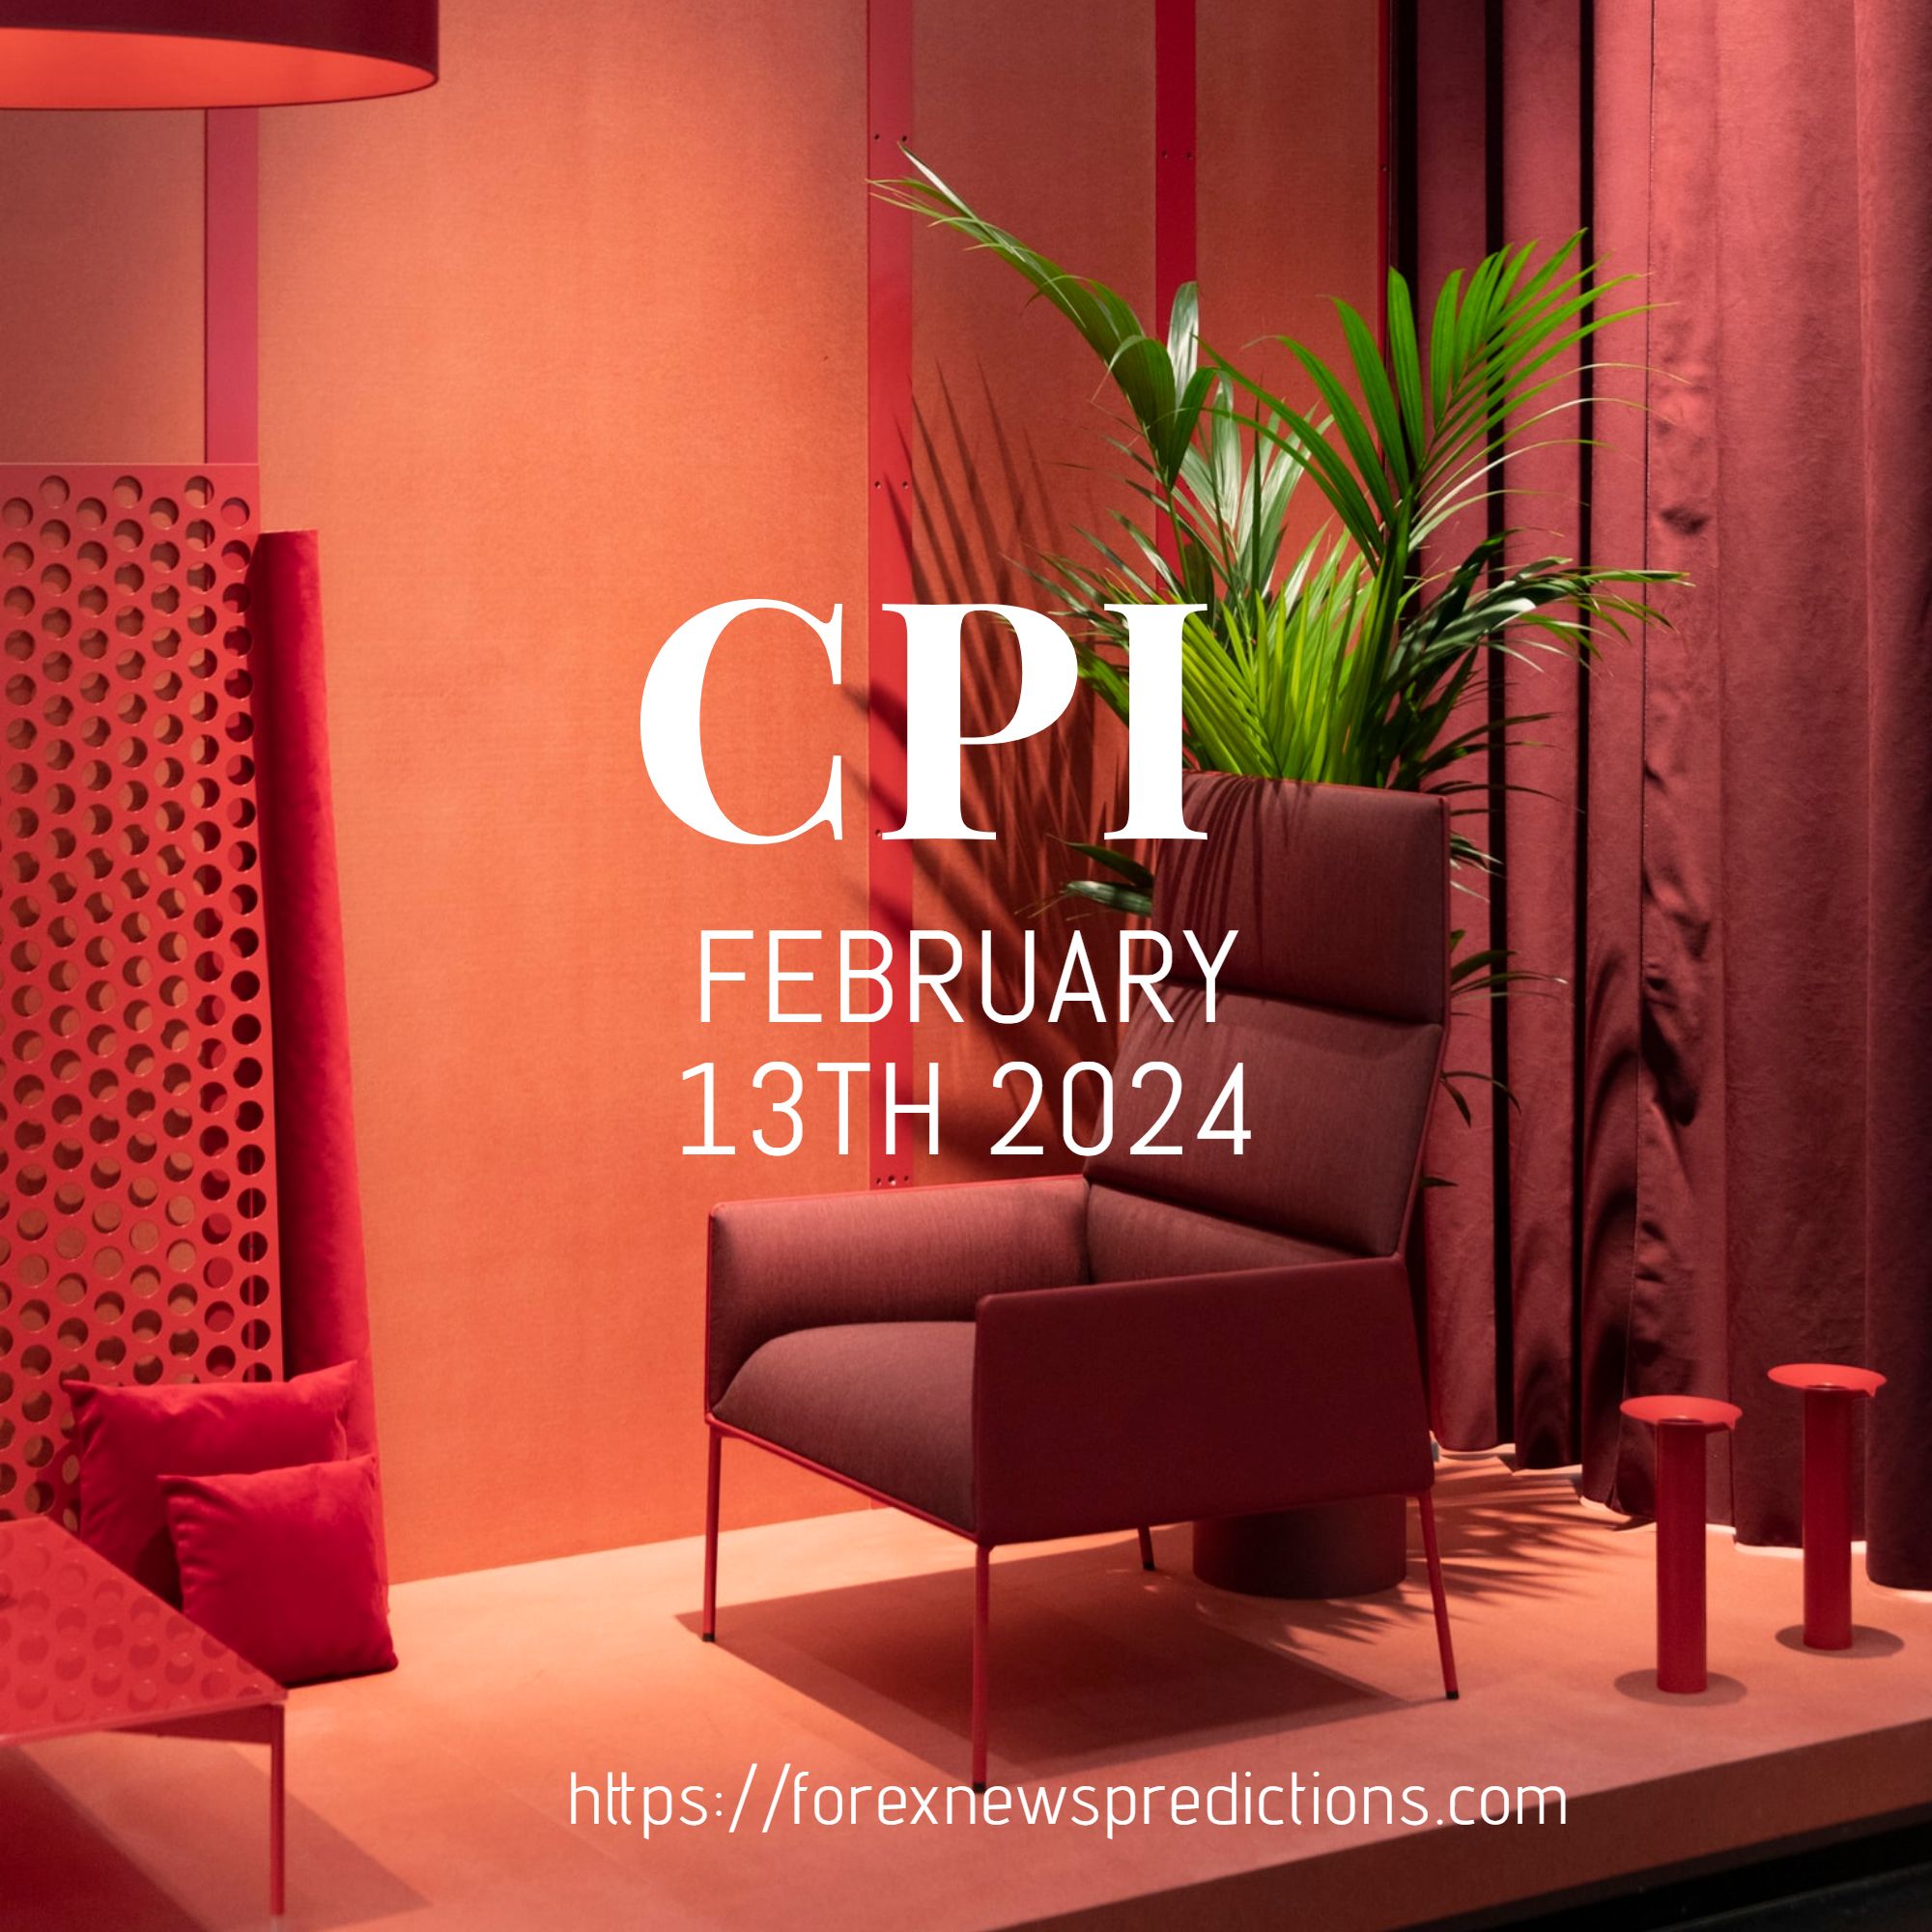 Core CPI News Direction Prediction February 13th 2024